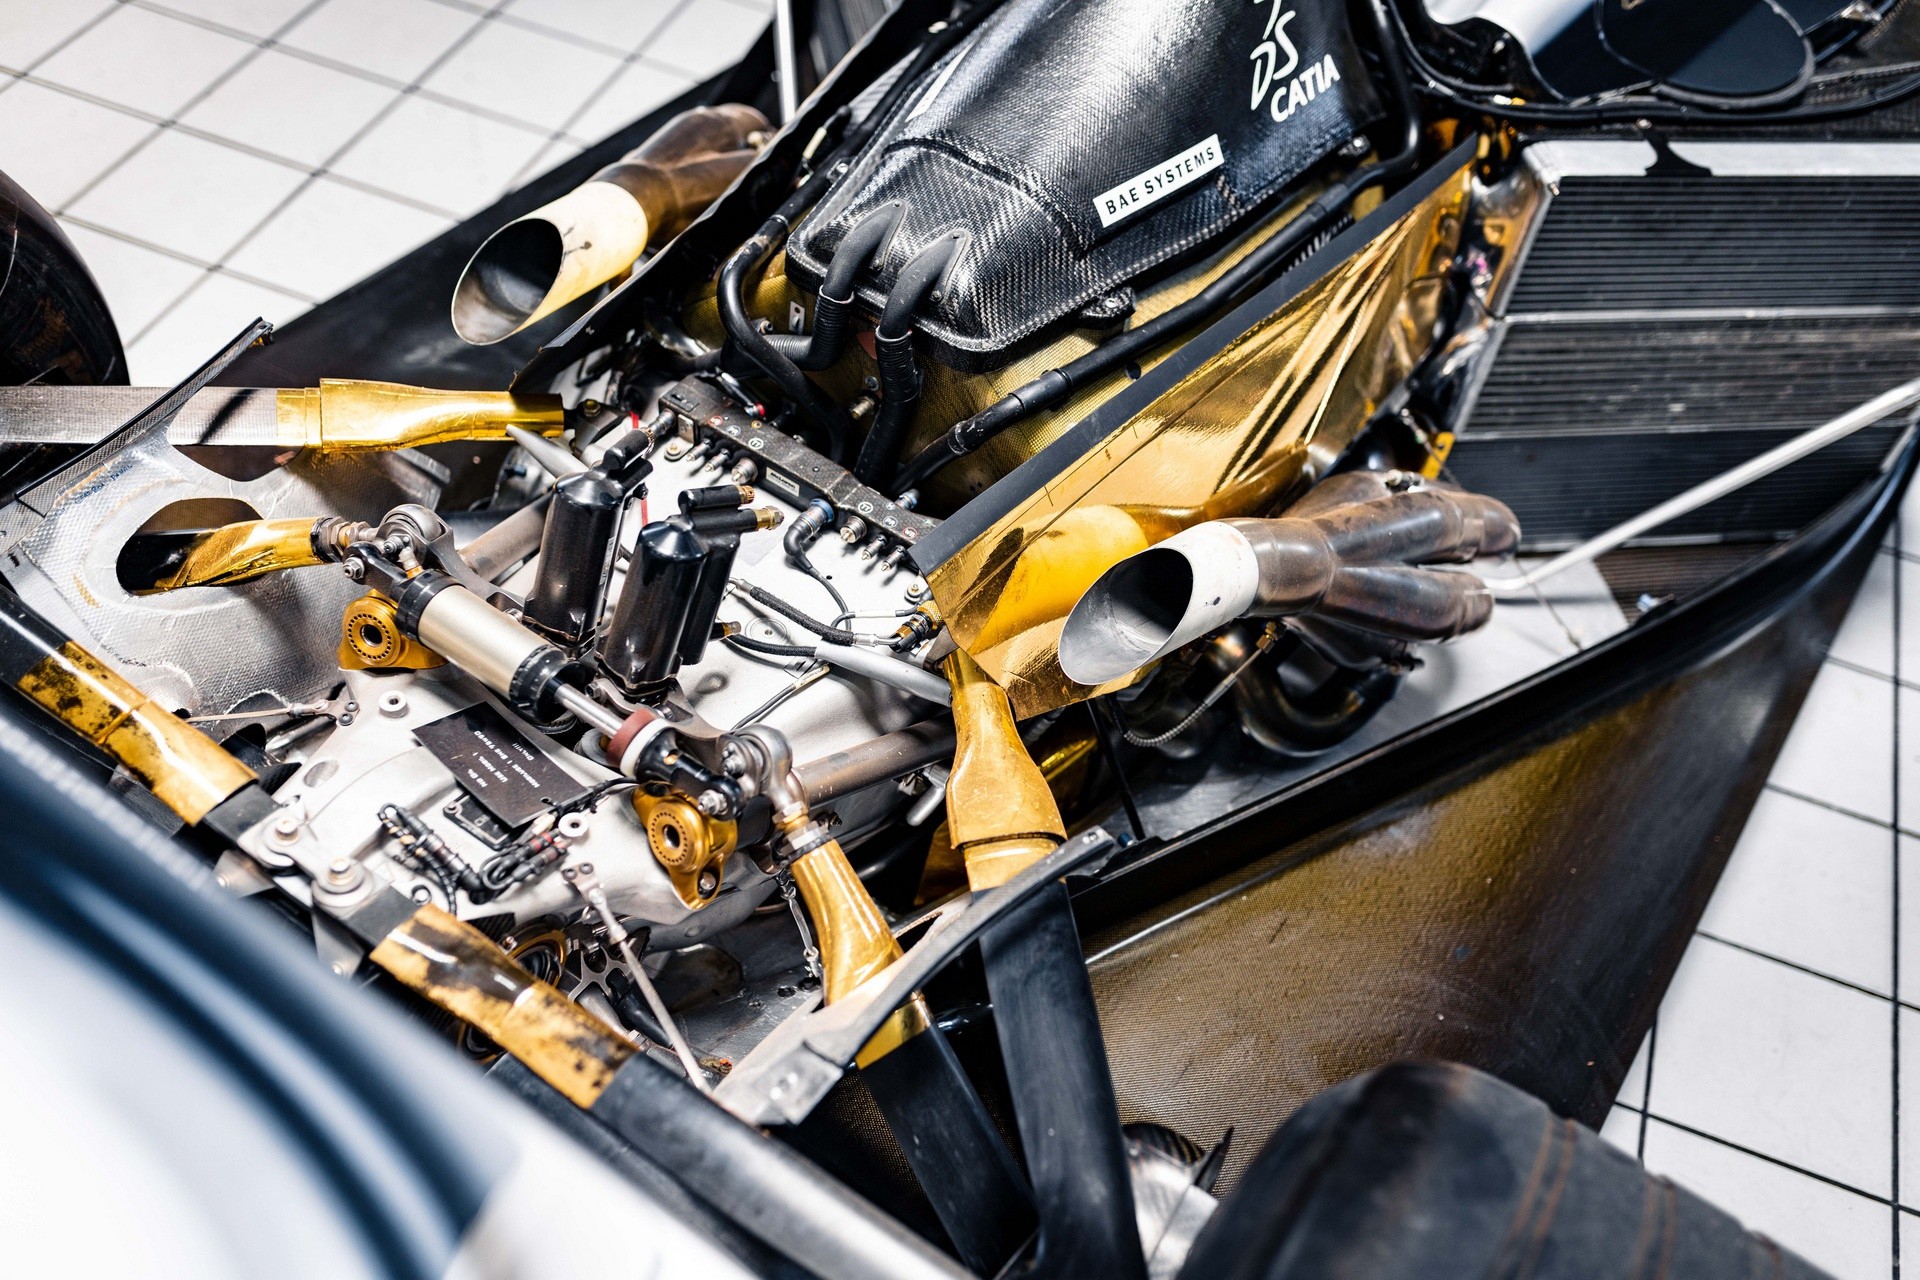 Настоящий гоночный болид McLaren MP4-17D выставили на аукцион